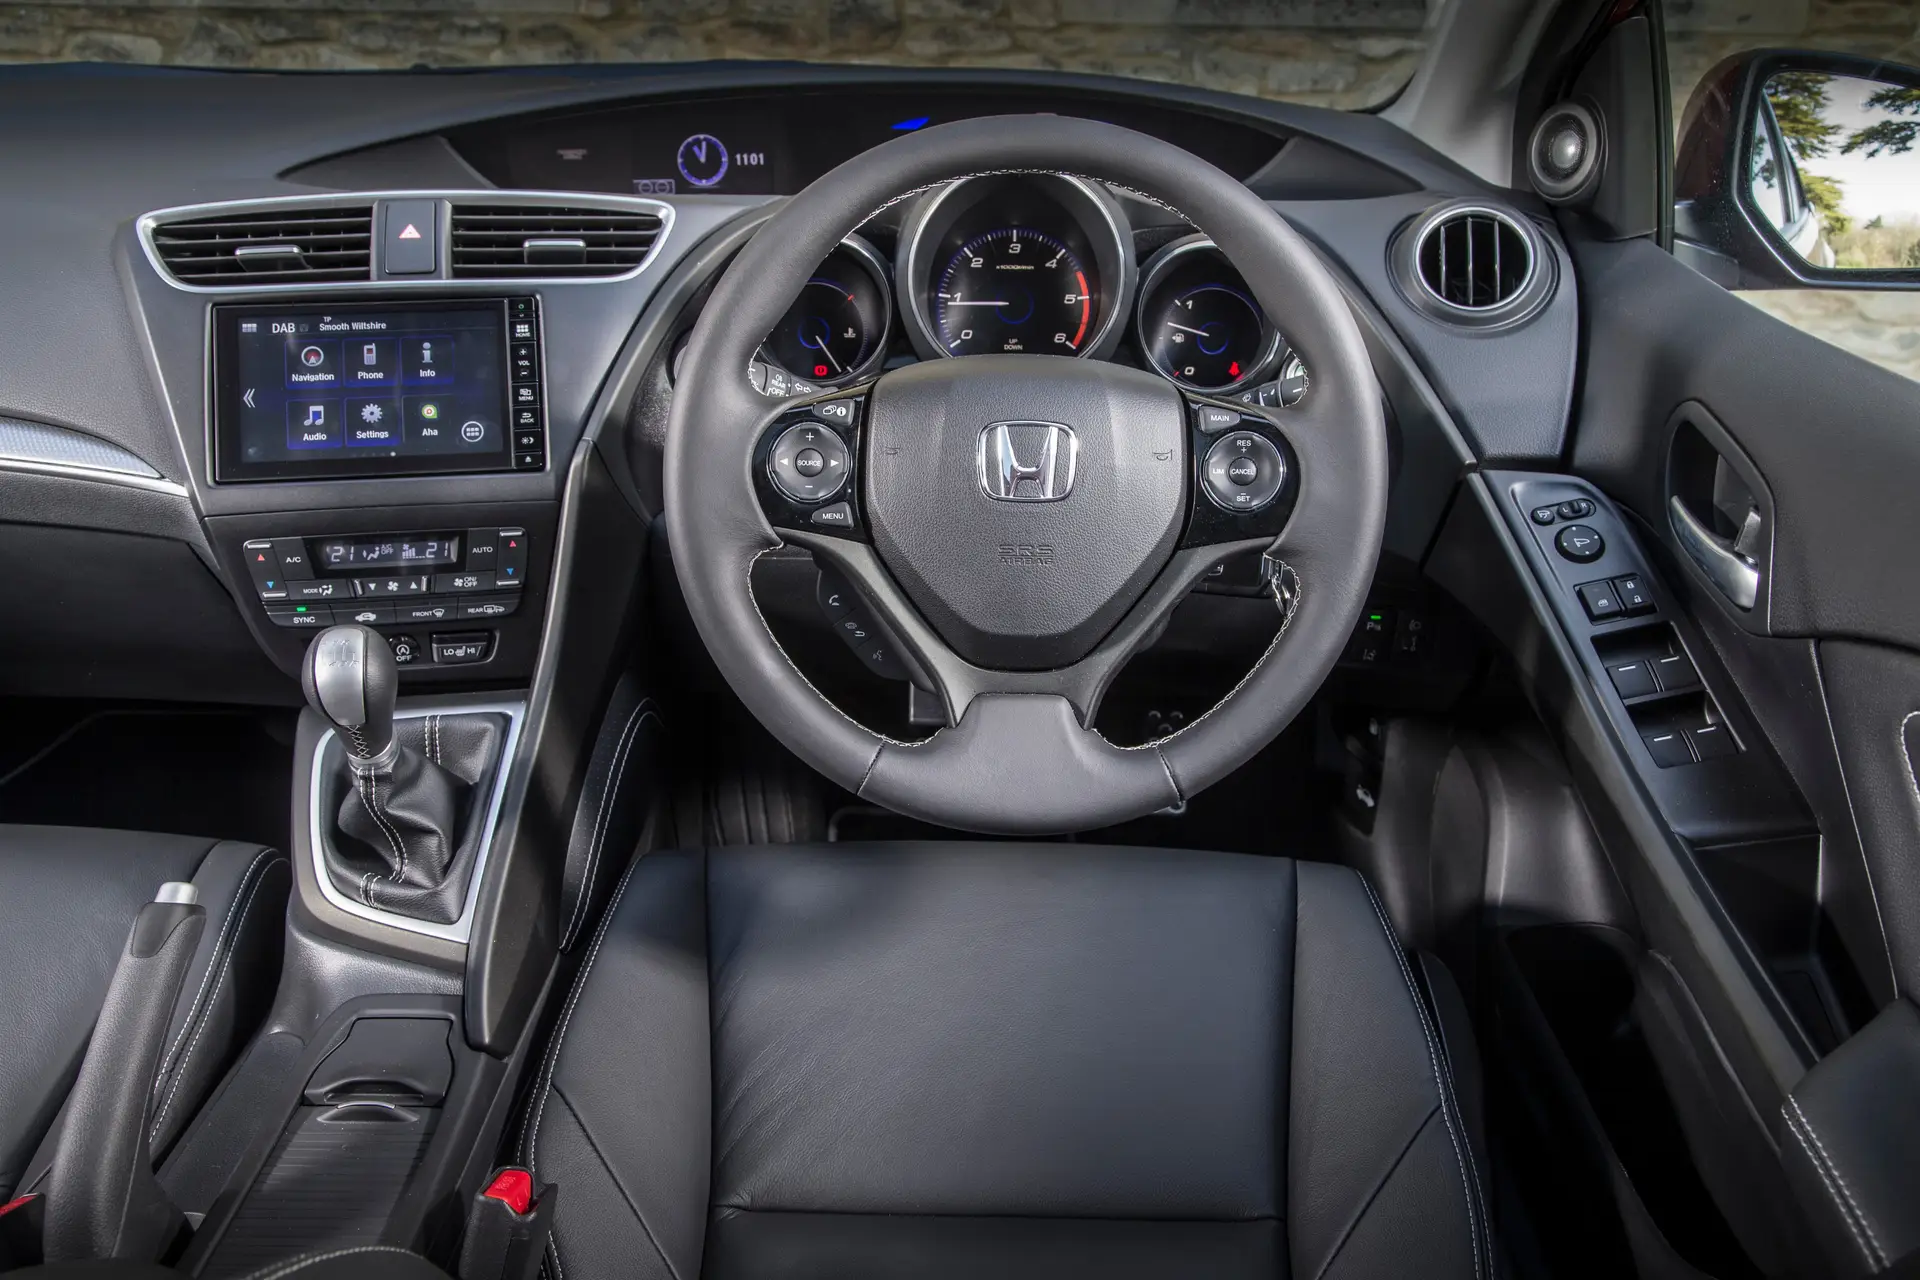 Used Honda Civic (2012-2017) Review: interior close up photo of the Honda Civic dashboard